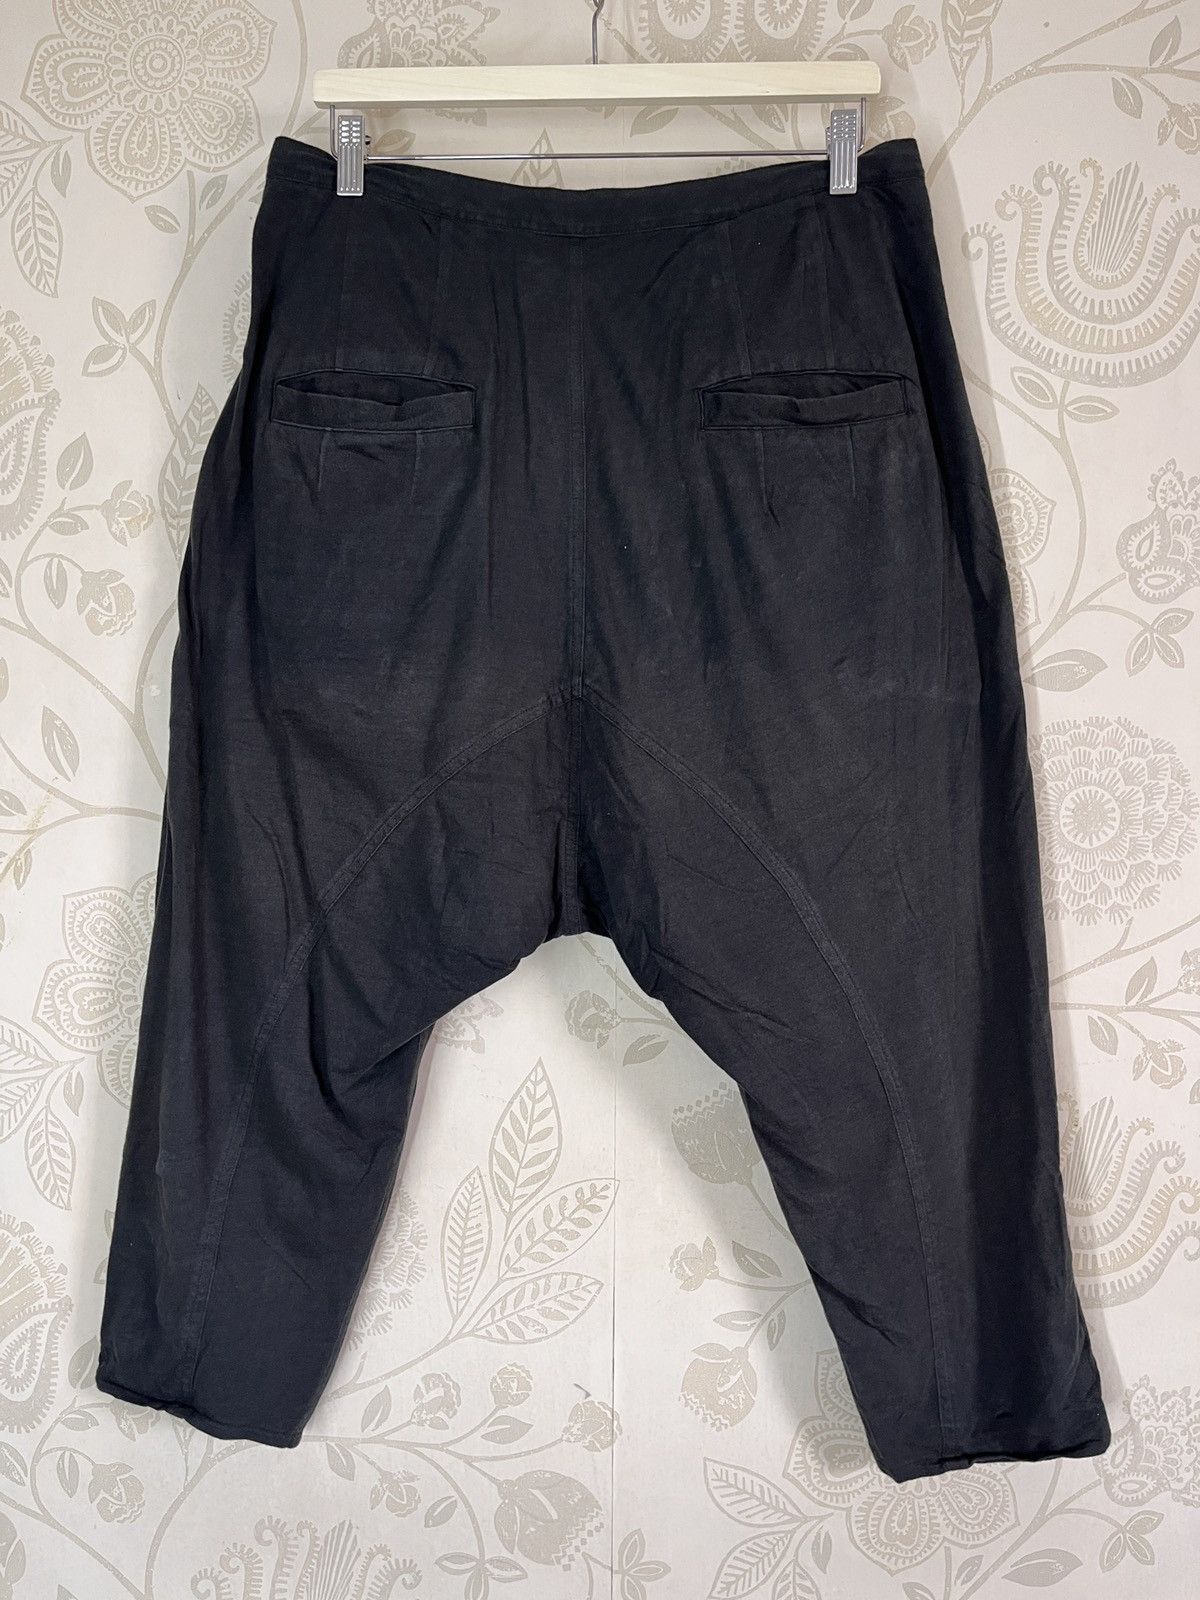 Stylo PPFM Long Short Pants Vintage - 17